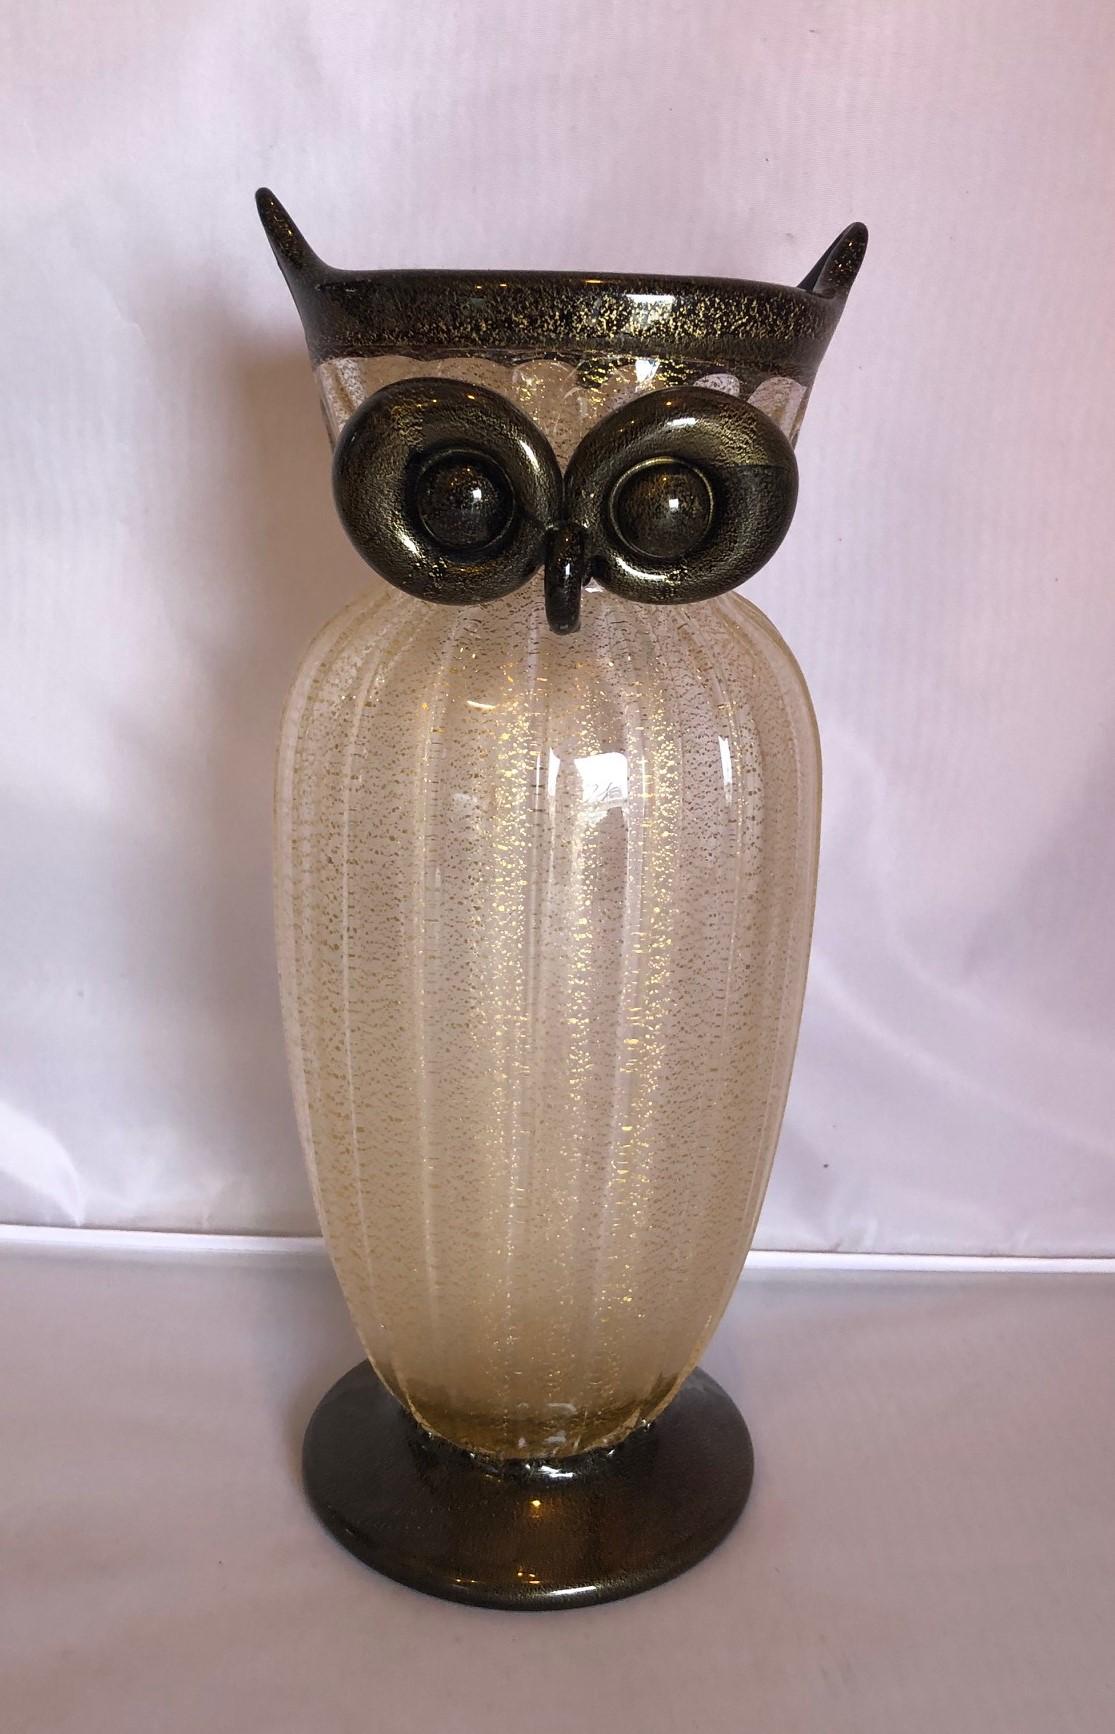 Murano art glass owl vase Poggi

Gorgeous art glass owl vase by Gambaro & Poggi for Murano Glass, circa 1970s. The vase is 10.25